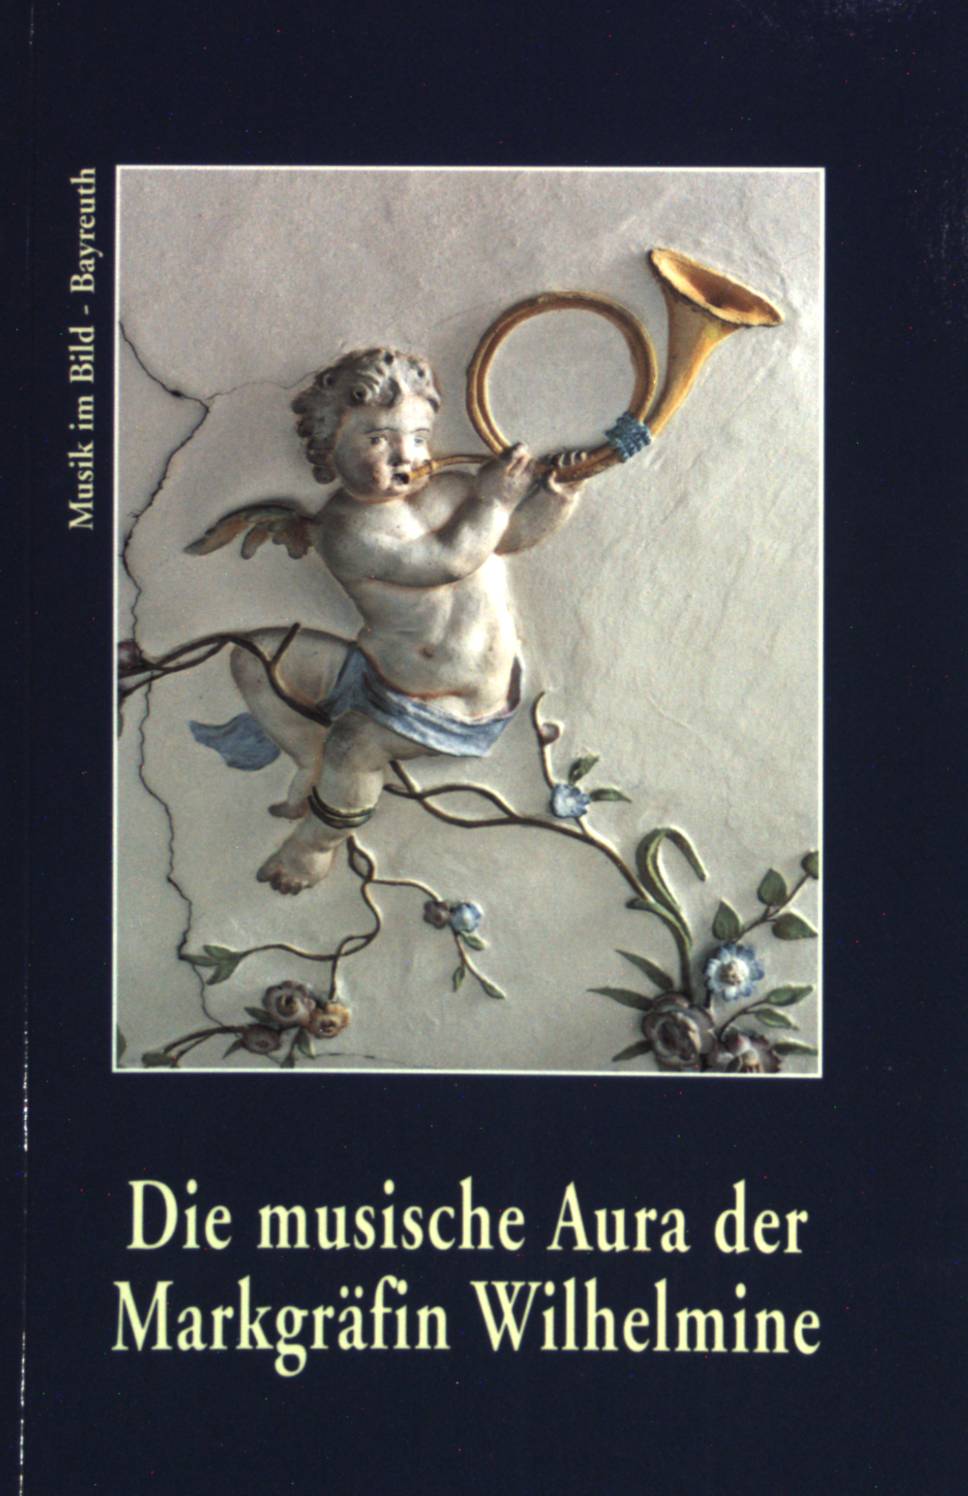 Bayreuth, Die musische Aura der Markgräfin Wilhelmine: Musikinszenierung in der Kunst des Bayreuther Rokoko (Musik im Bild)